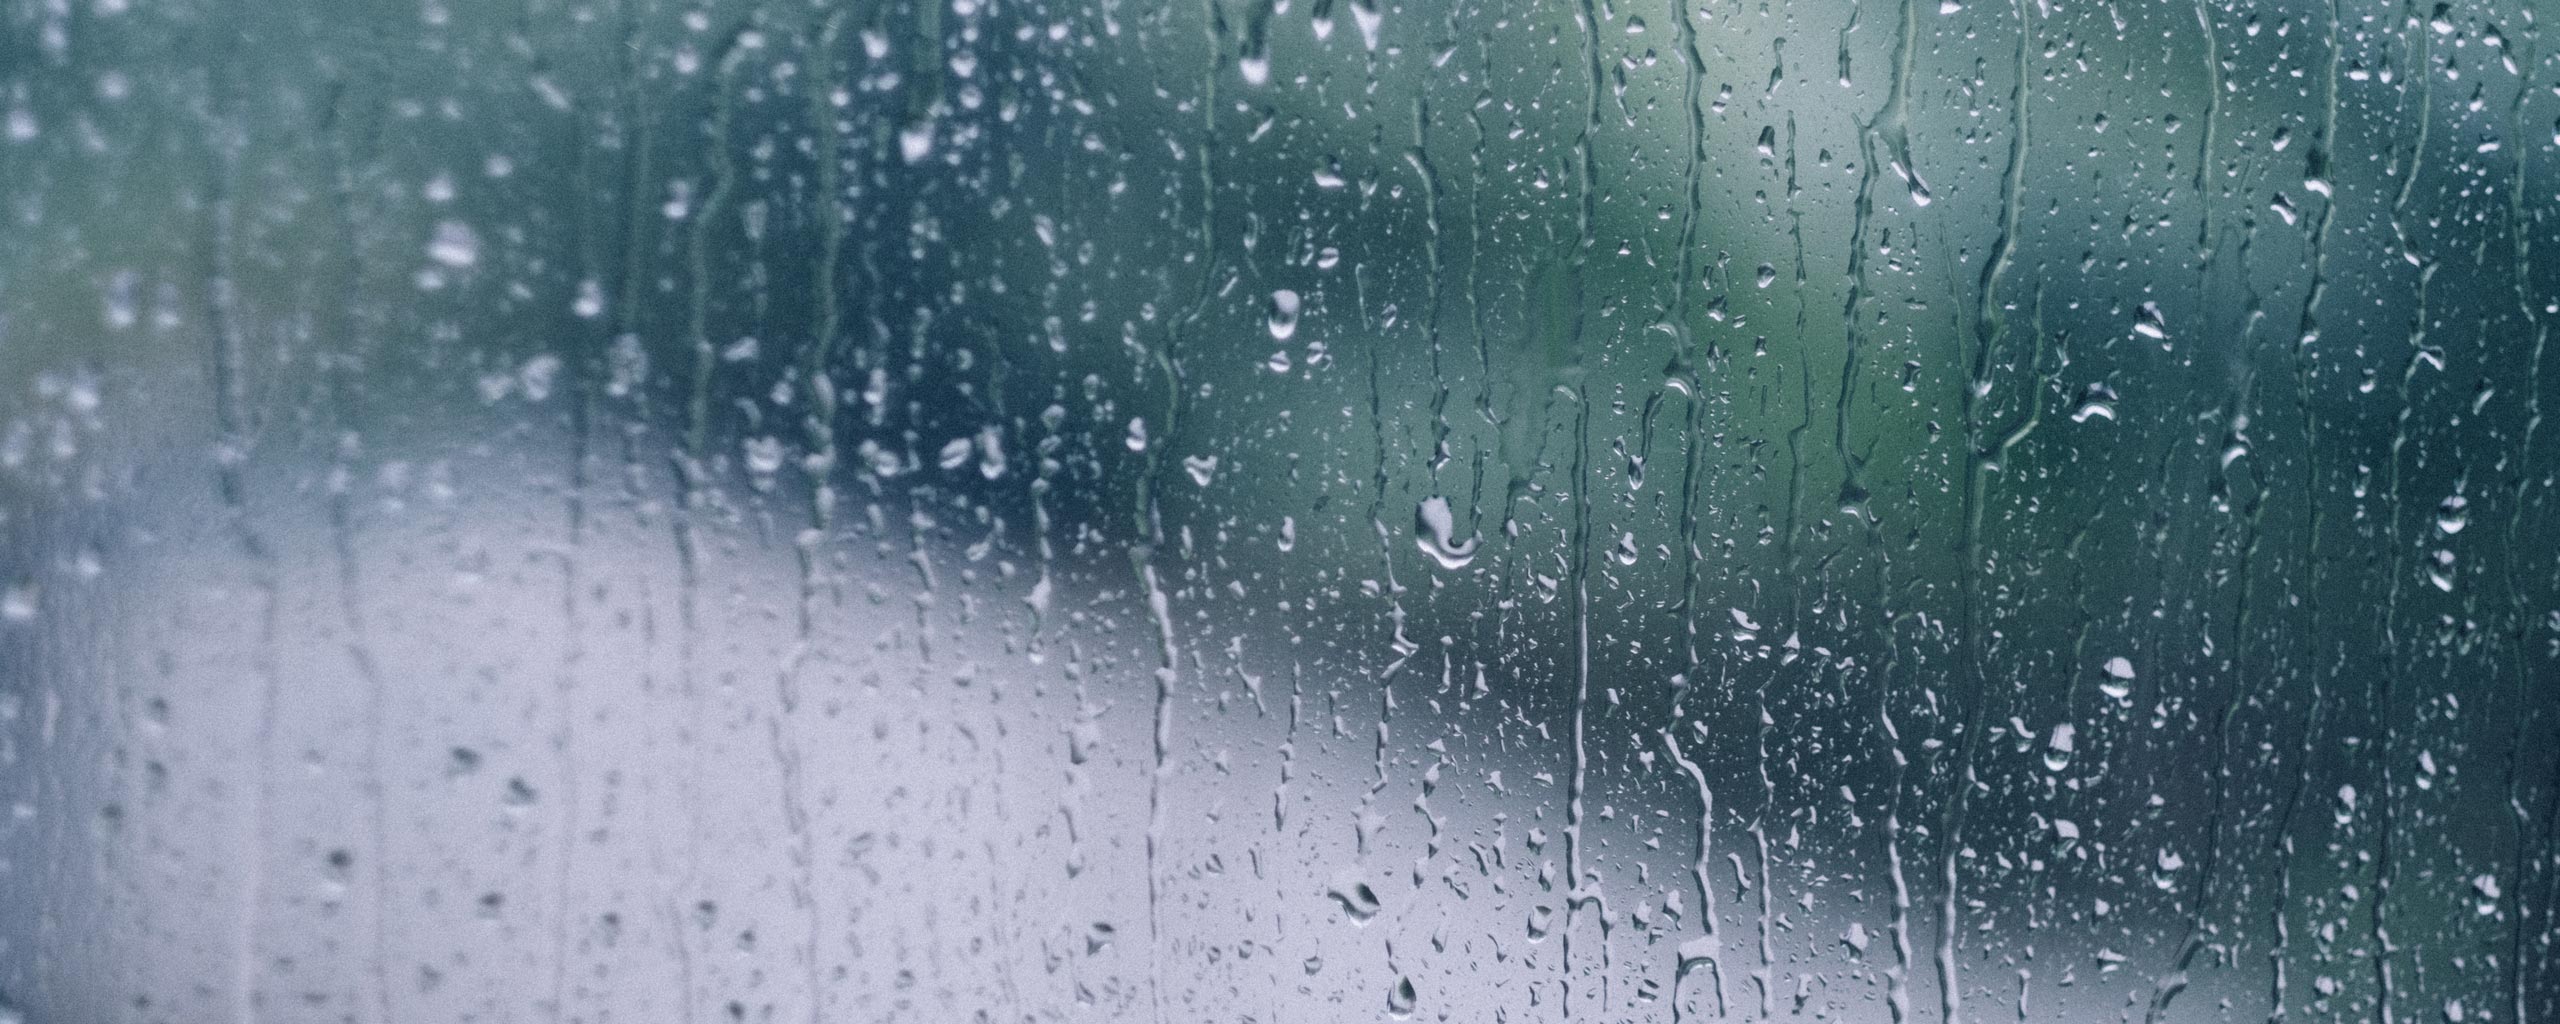 Rain Images, Pictures, Photos - Rain Photographs | Shutterstock